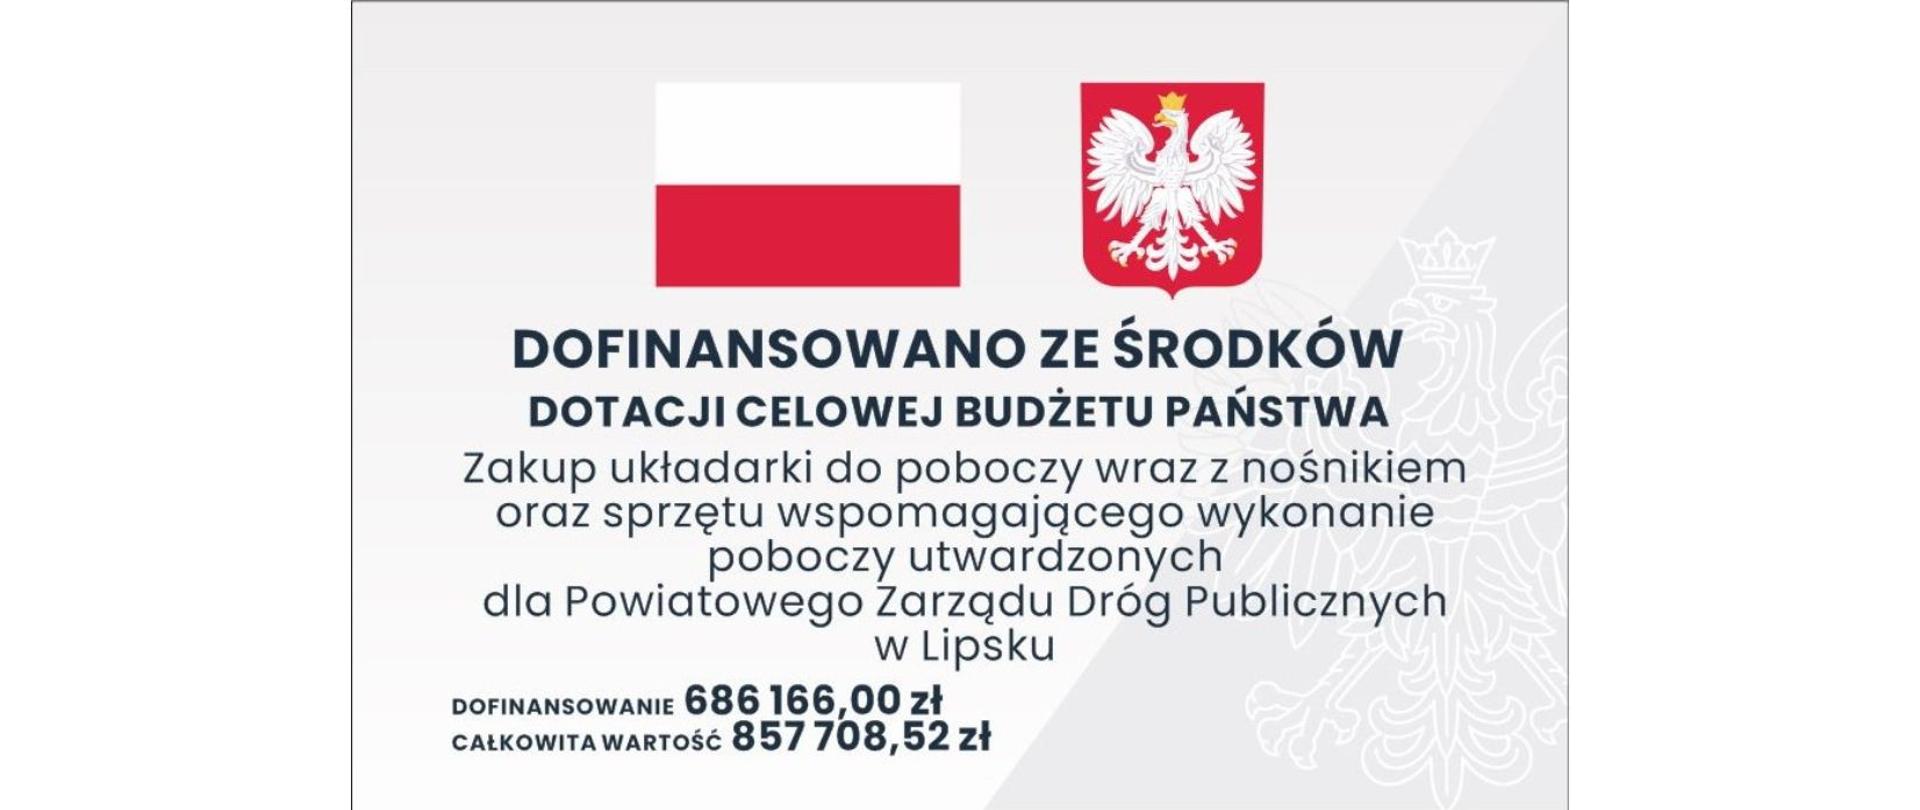 Tablica informacyjna z nazwą zadania i kwotami dofinansowania na szarym tle. W górnej części grafiki znajduje się Flaga oraz Godło Polski